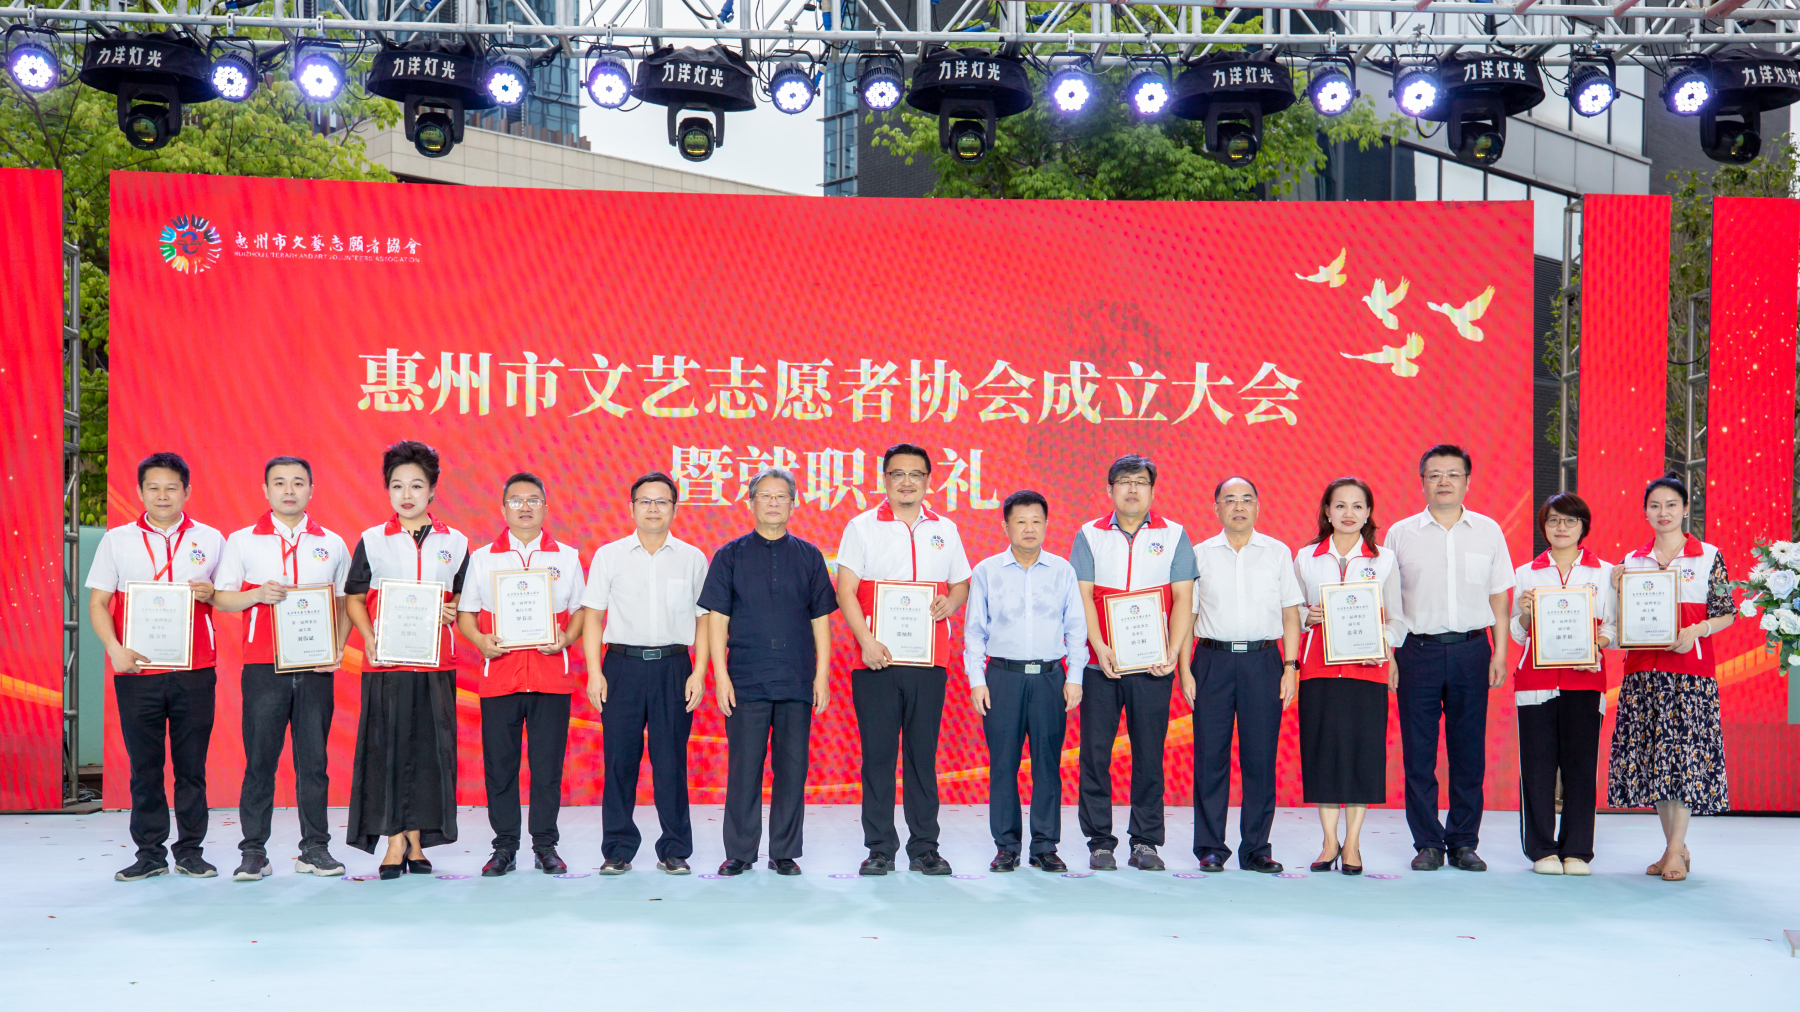 4、惠州市文艺志愿者协会成立大会，第一届理事会第一次会议选举产生的第一届理事会成员和主席团成员.jpg